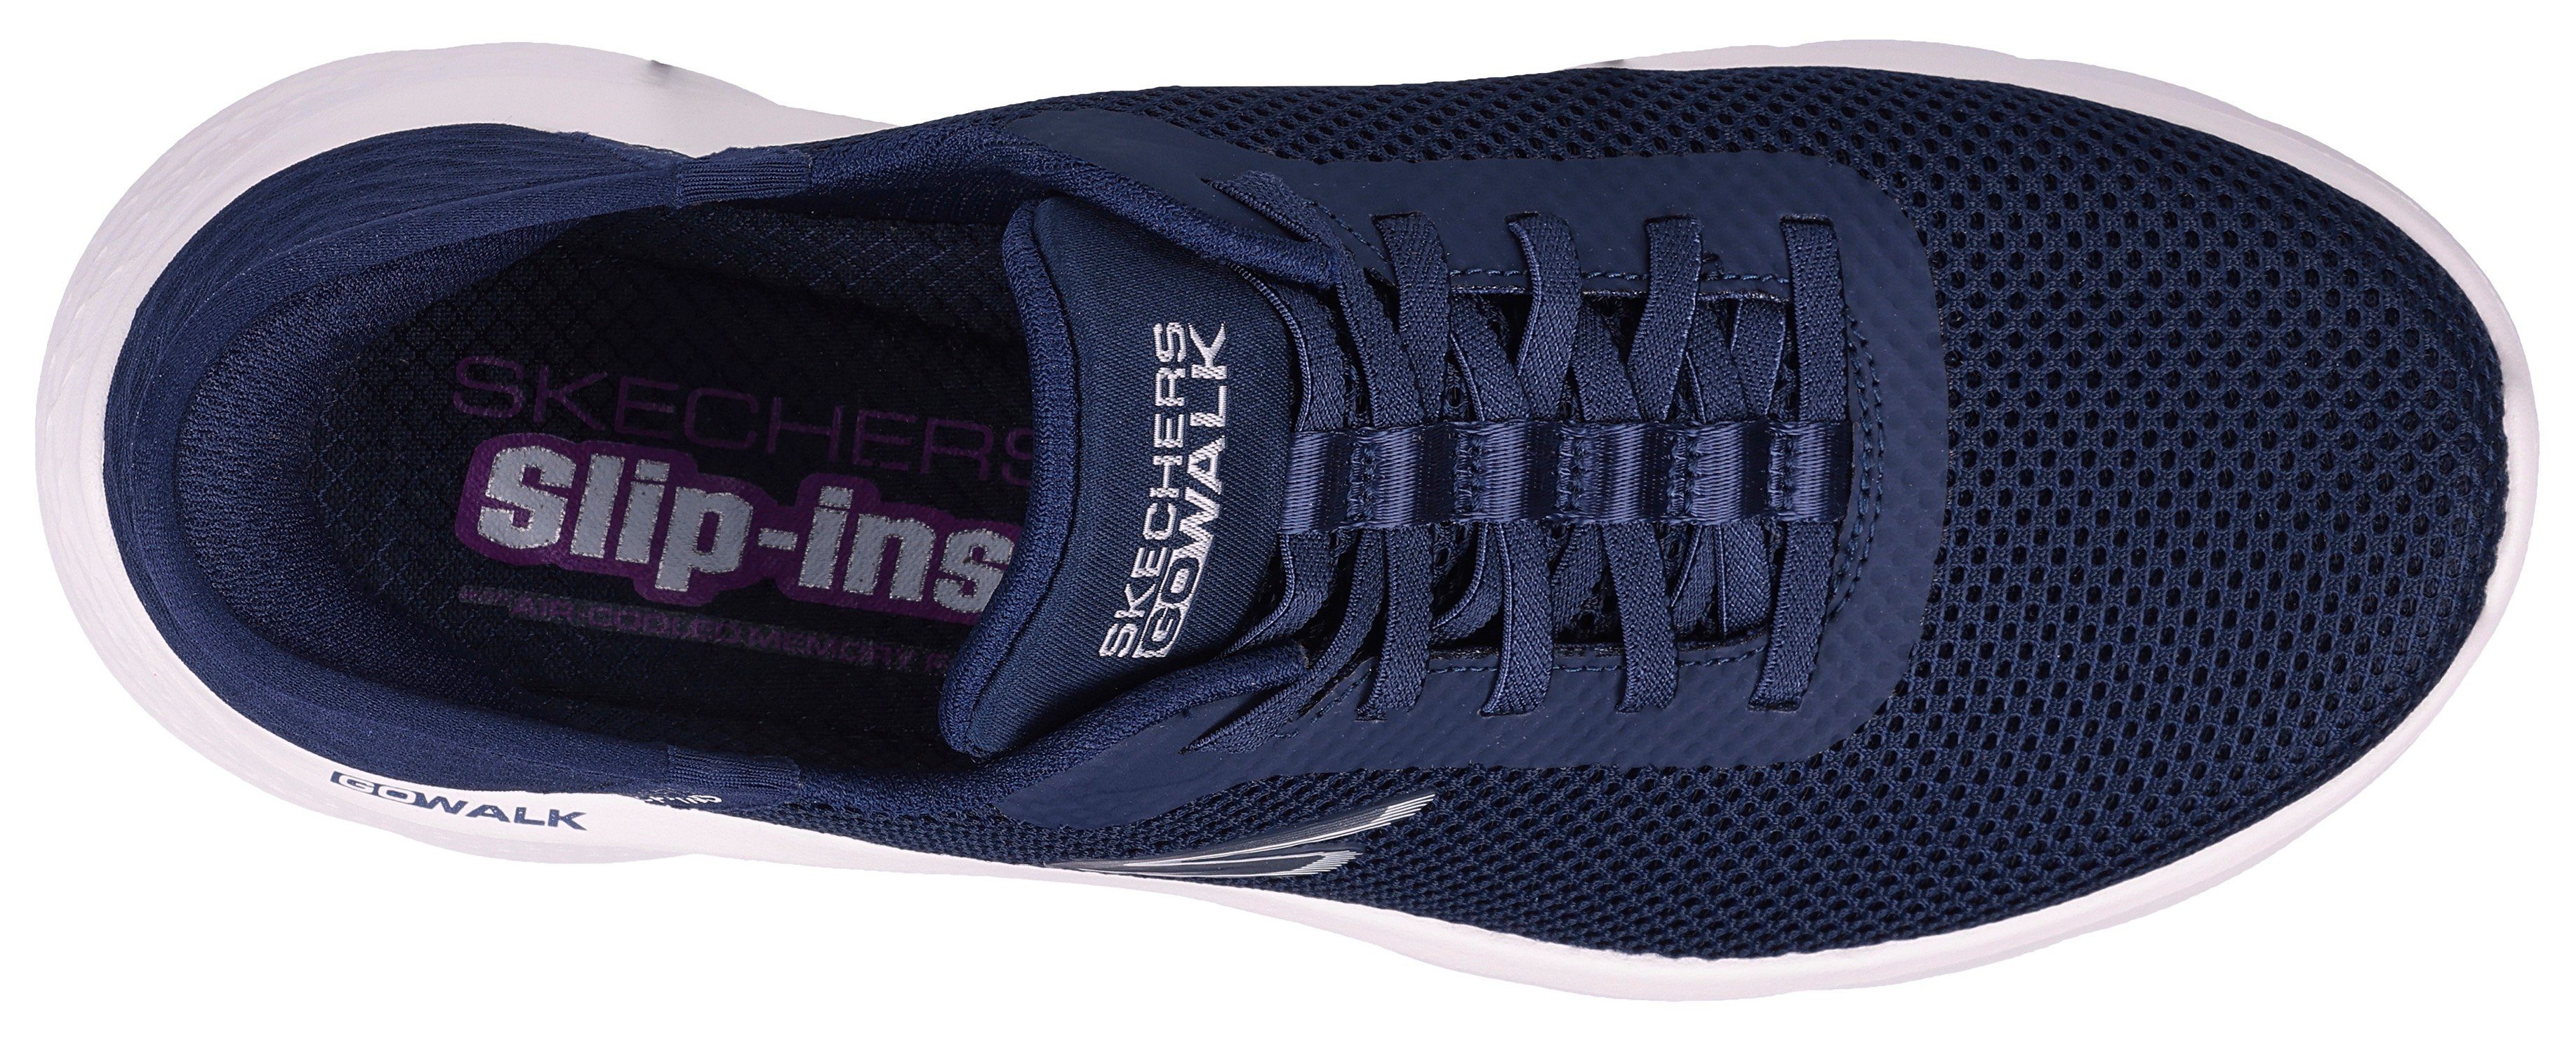 GO Skechers Maschinenwäsche ENTRANCE für navy-weiß FLEX-GRAND Sneaker WALK geeignet Slip-On